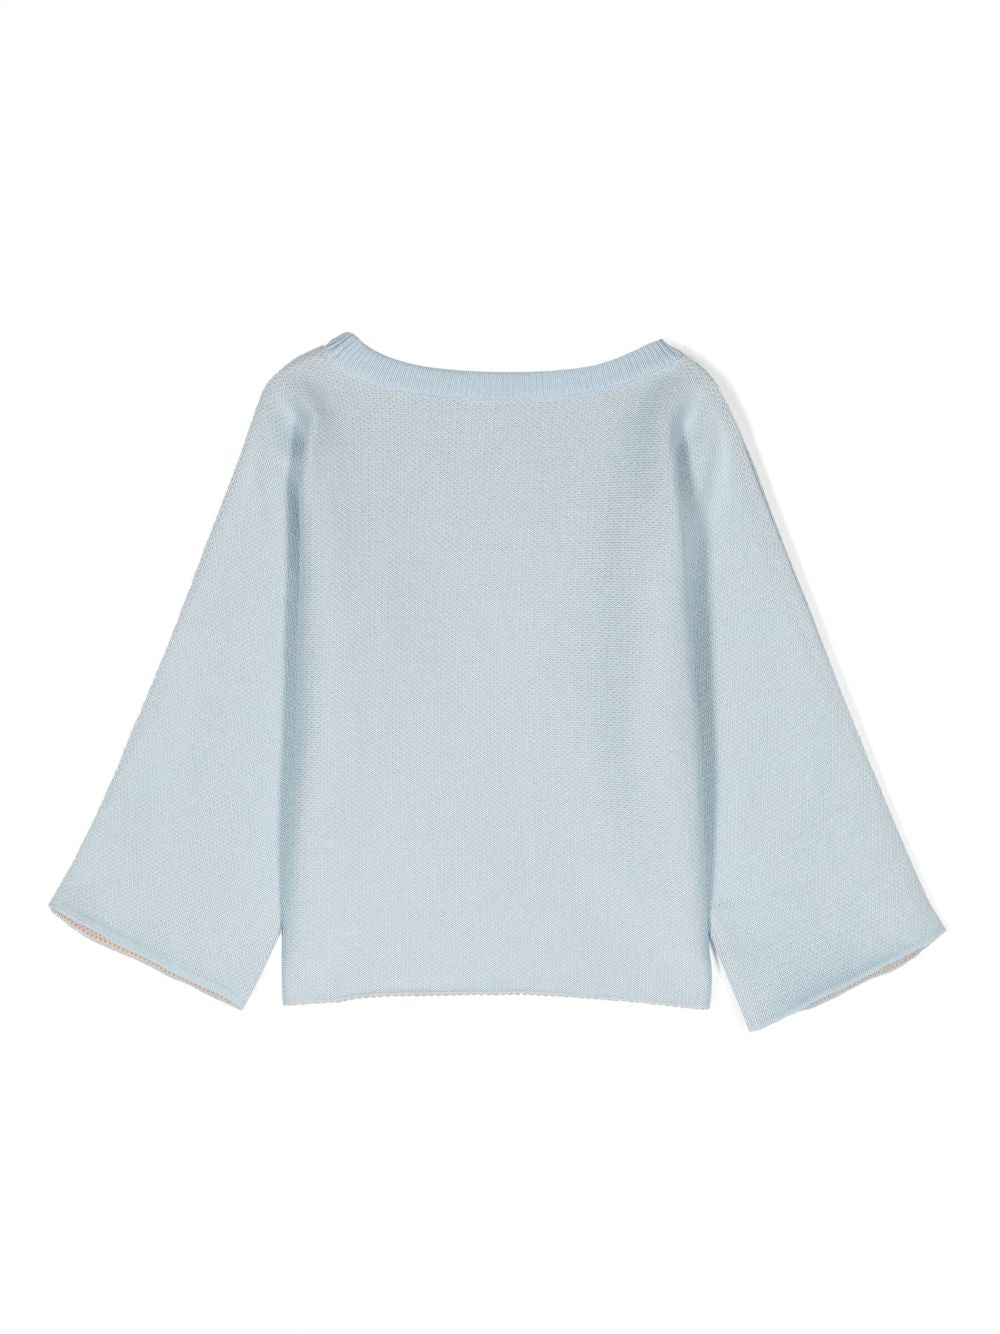 Light blue sweater for girls